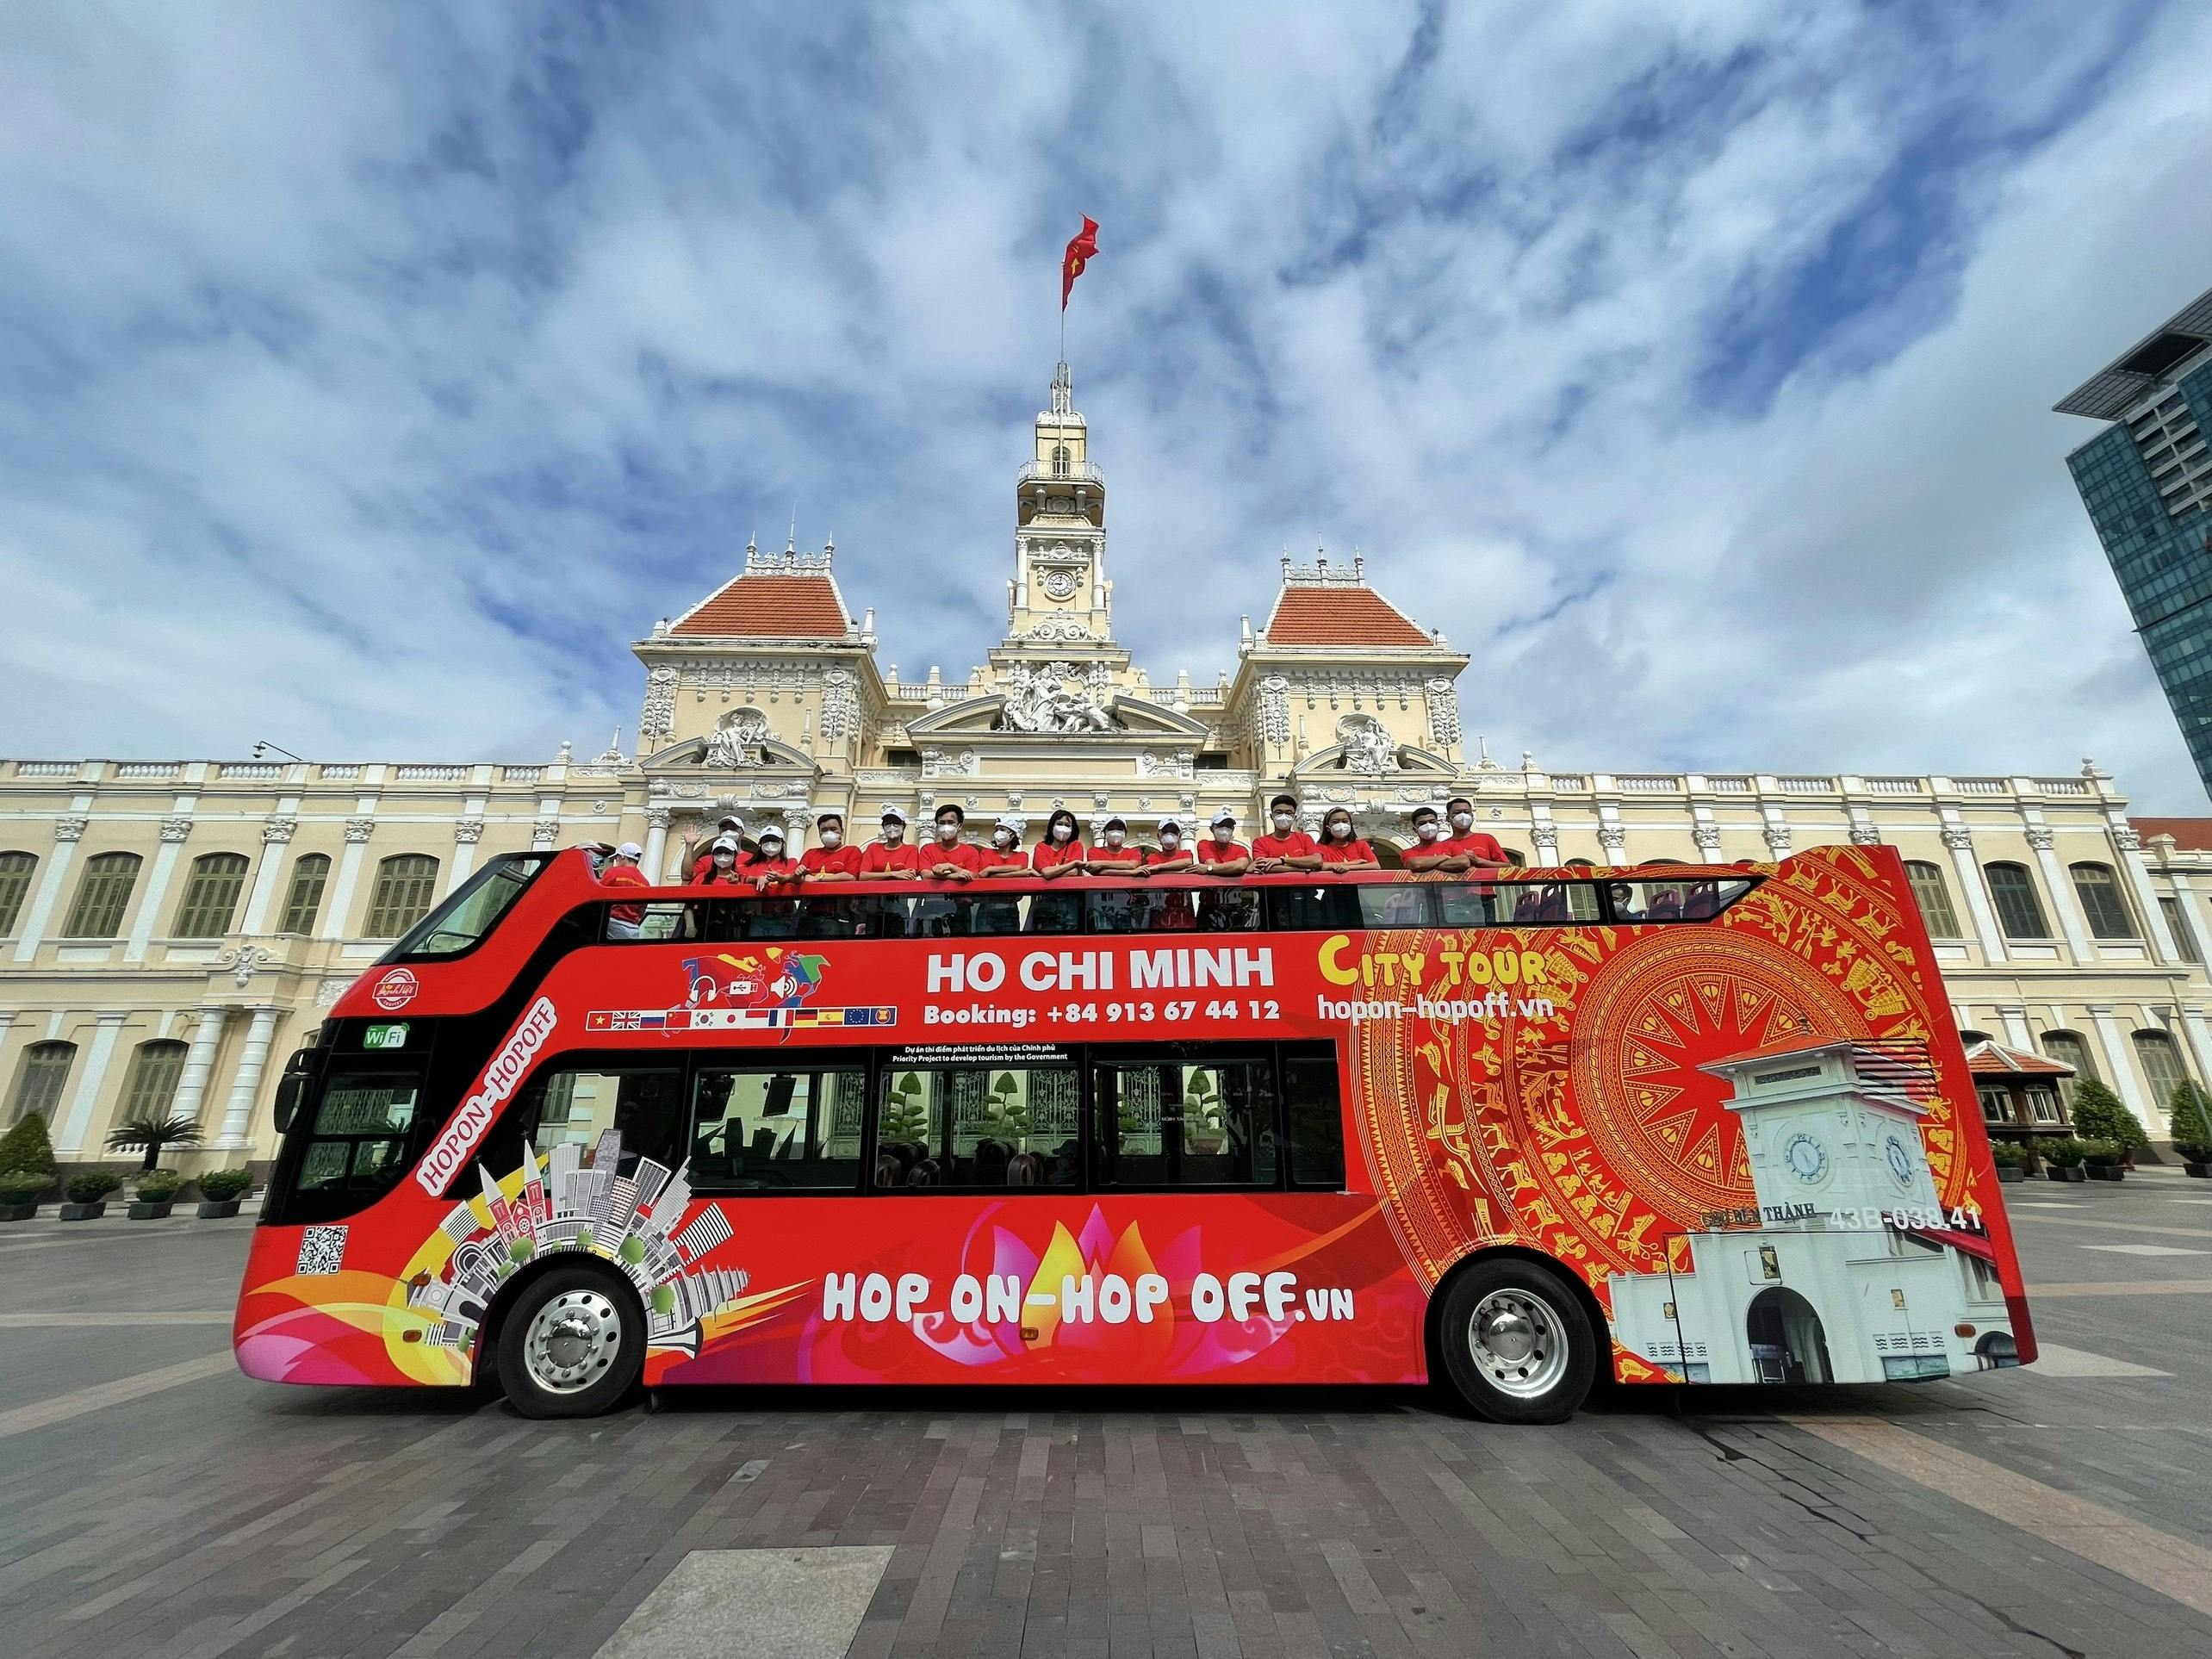 Ho Chi Minh City hop on off bus tour Musement